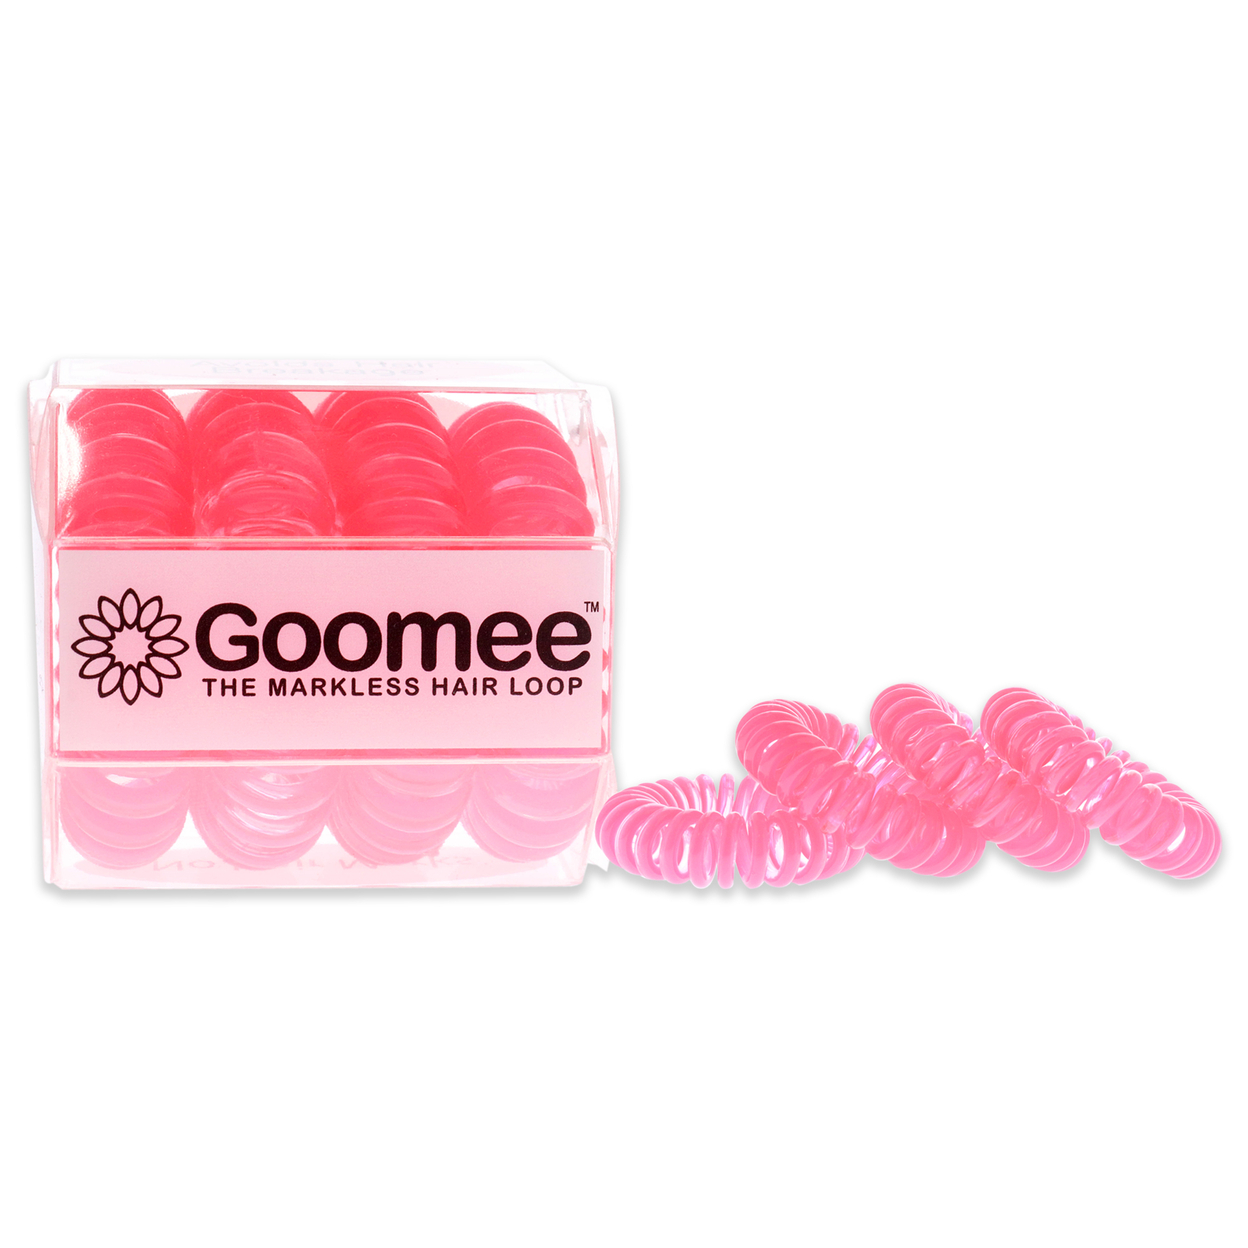 Goomee The Markless Hair Loop Set - Got Pink Hair Tie 4 Pc